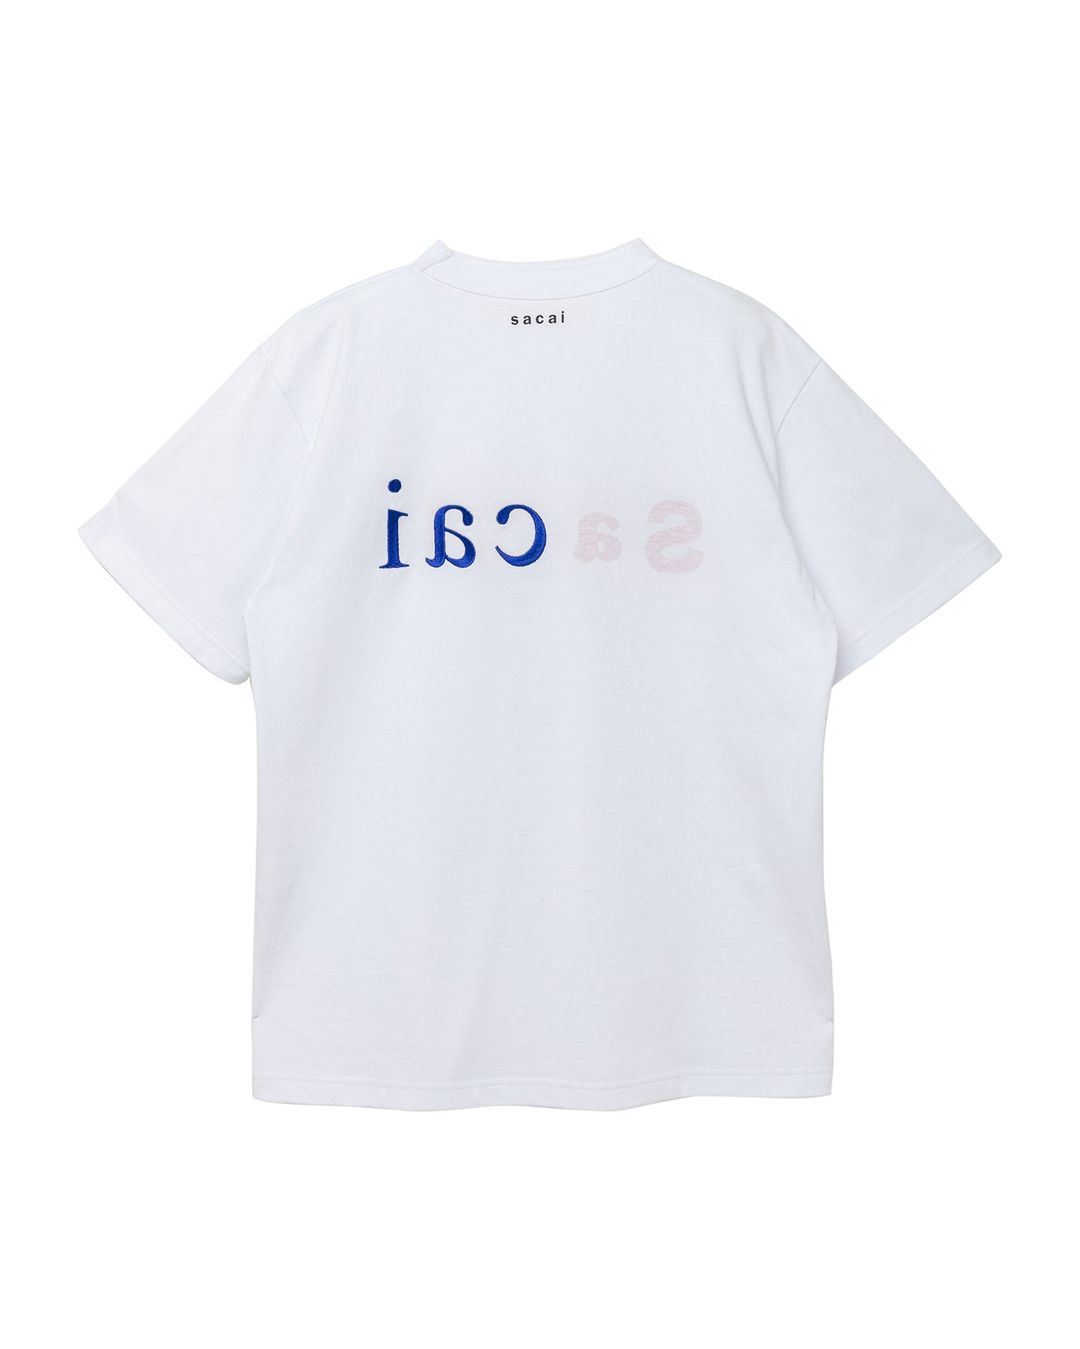 sacai Aoyama Exclusive T-Shirtにてリニューアルオープン記念限定TEE ...